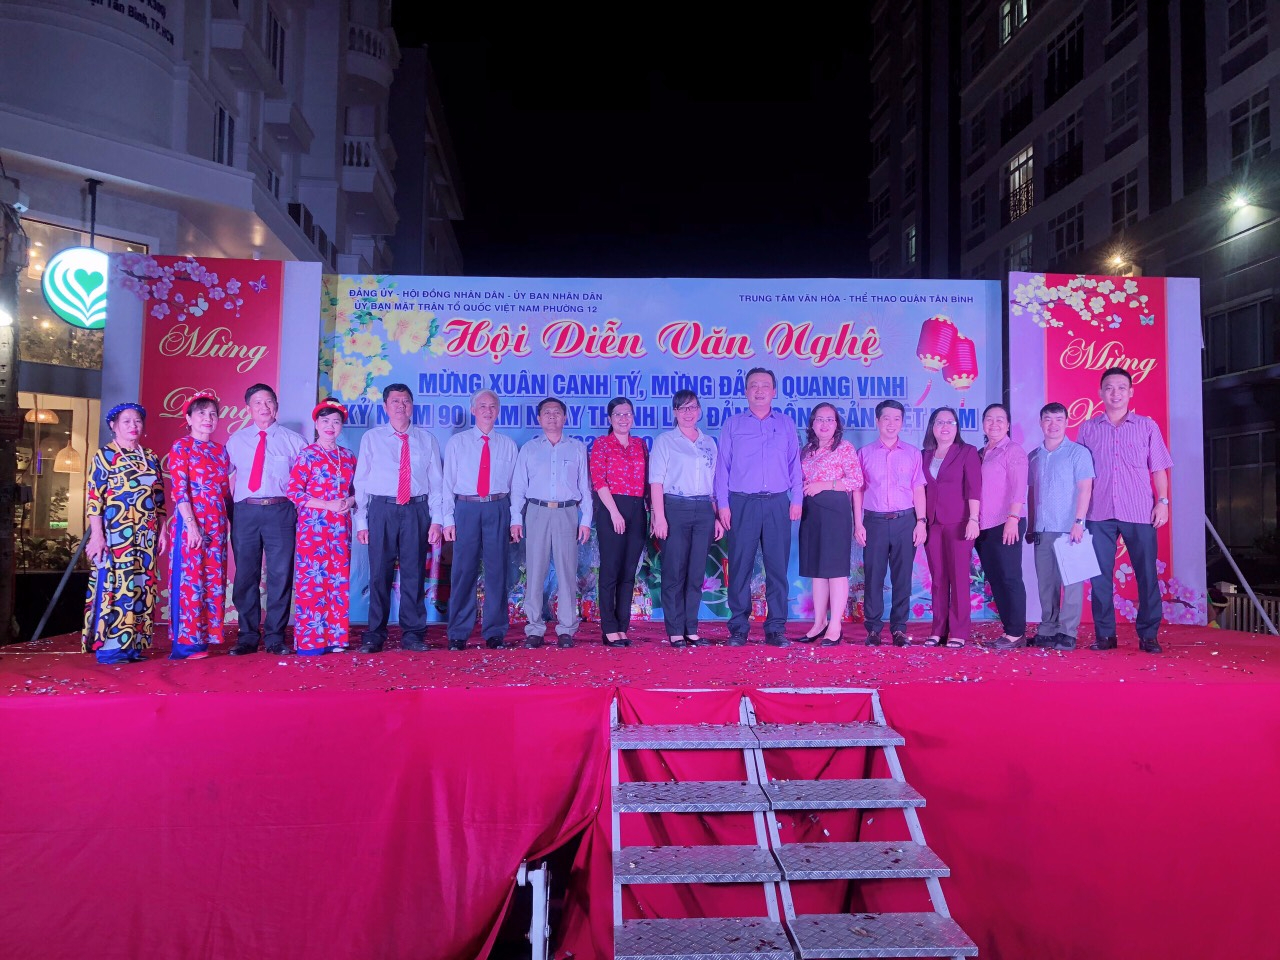 Phường 12: Tổ chức đêm văn nghệ mừng Xuân Canh Tý, mừng Đảng quang vinh năm 2020